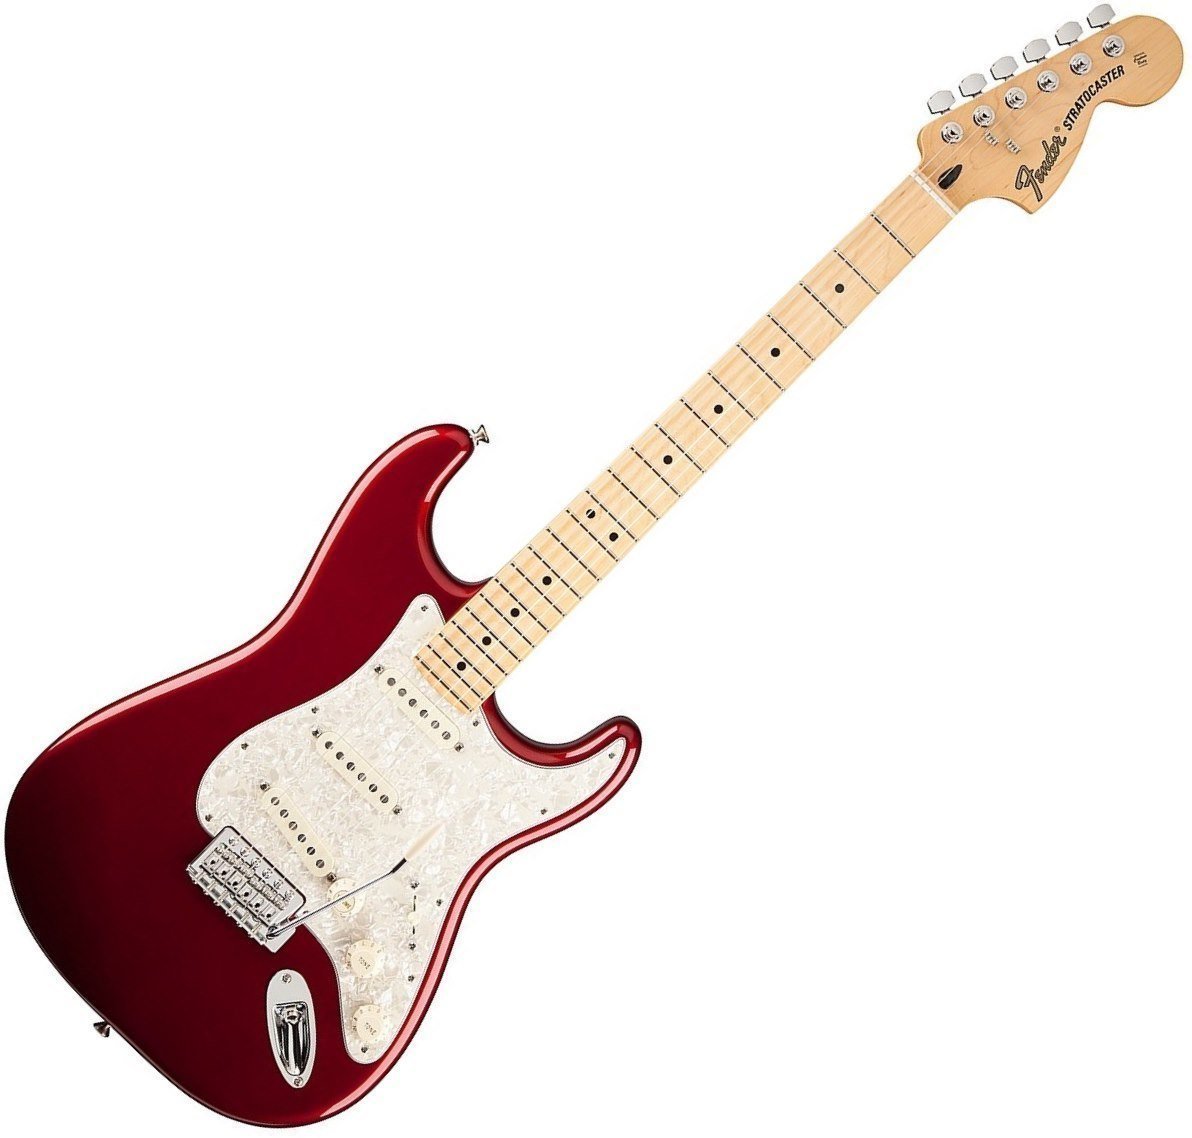 Električna gitara Fender Deluxe Roadhouse Stratocaster Maple Fingerboard, Candy Apple Red